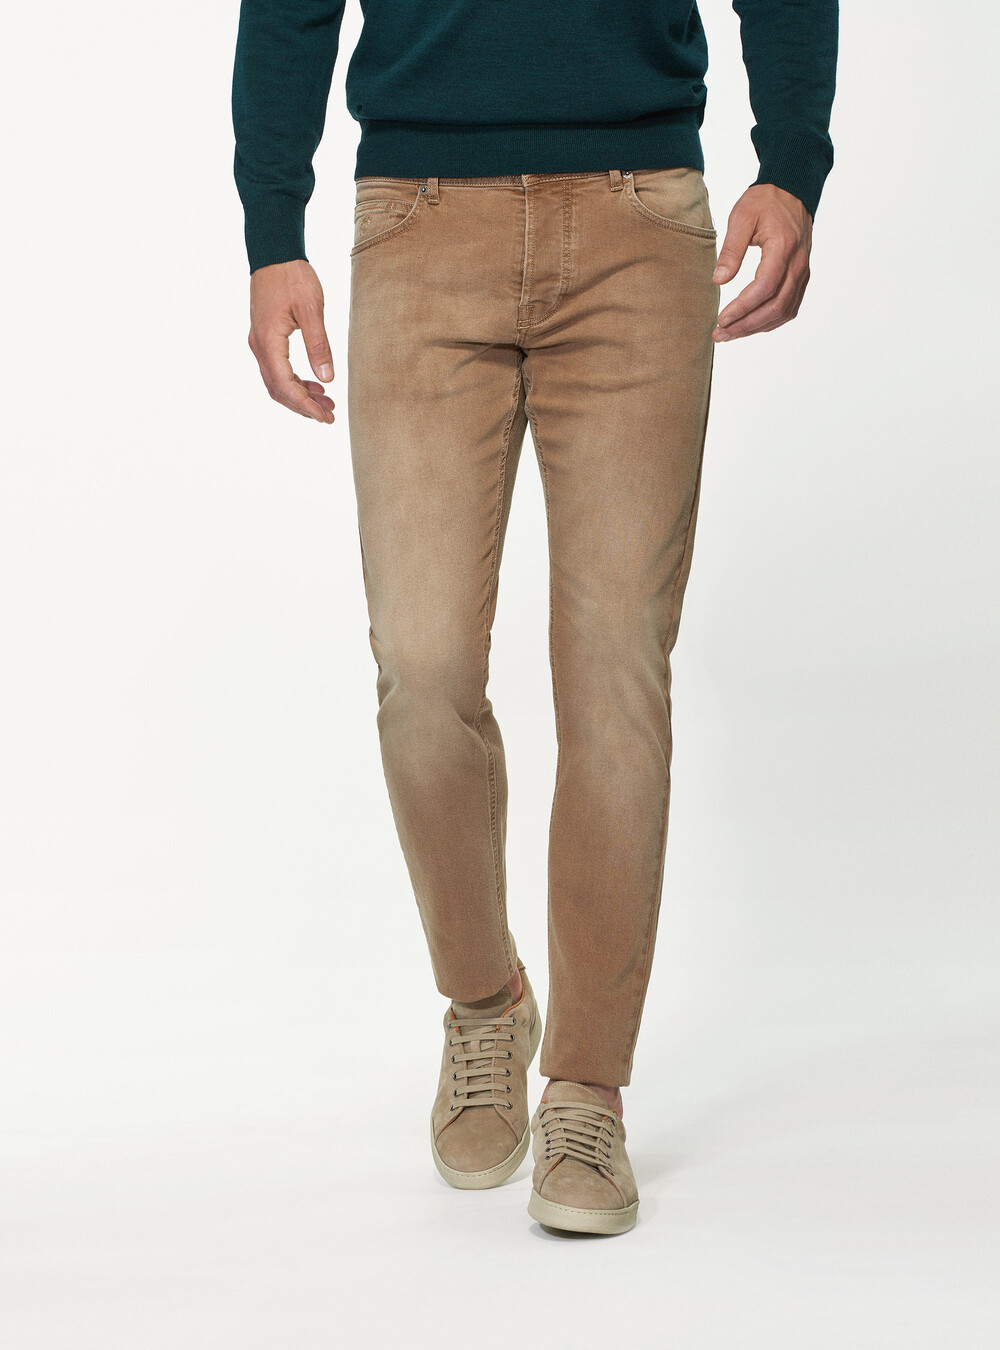 Jeans tailor fit colorati | Gutteridge | Pantaloni Uomo